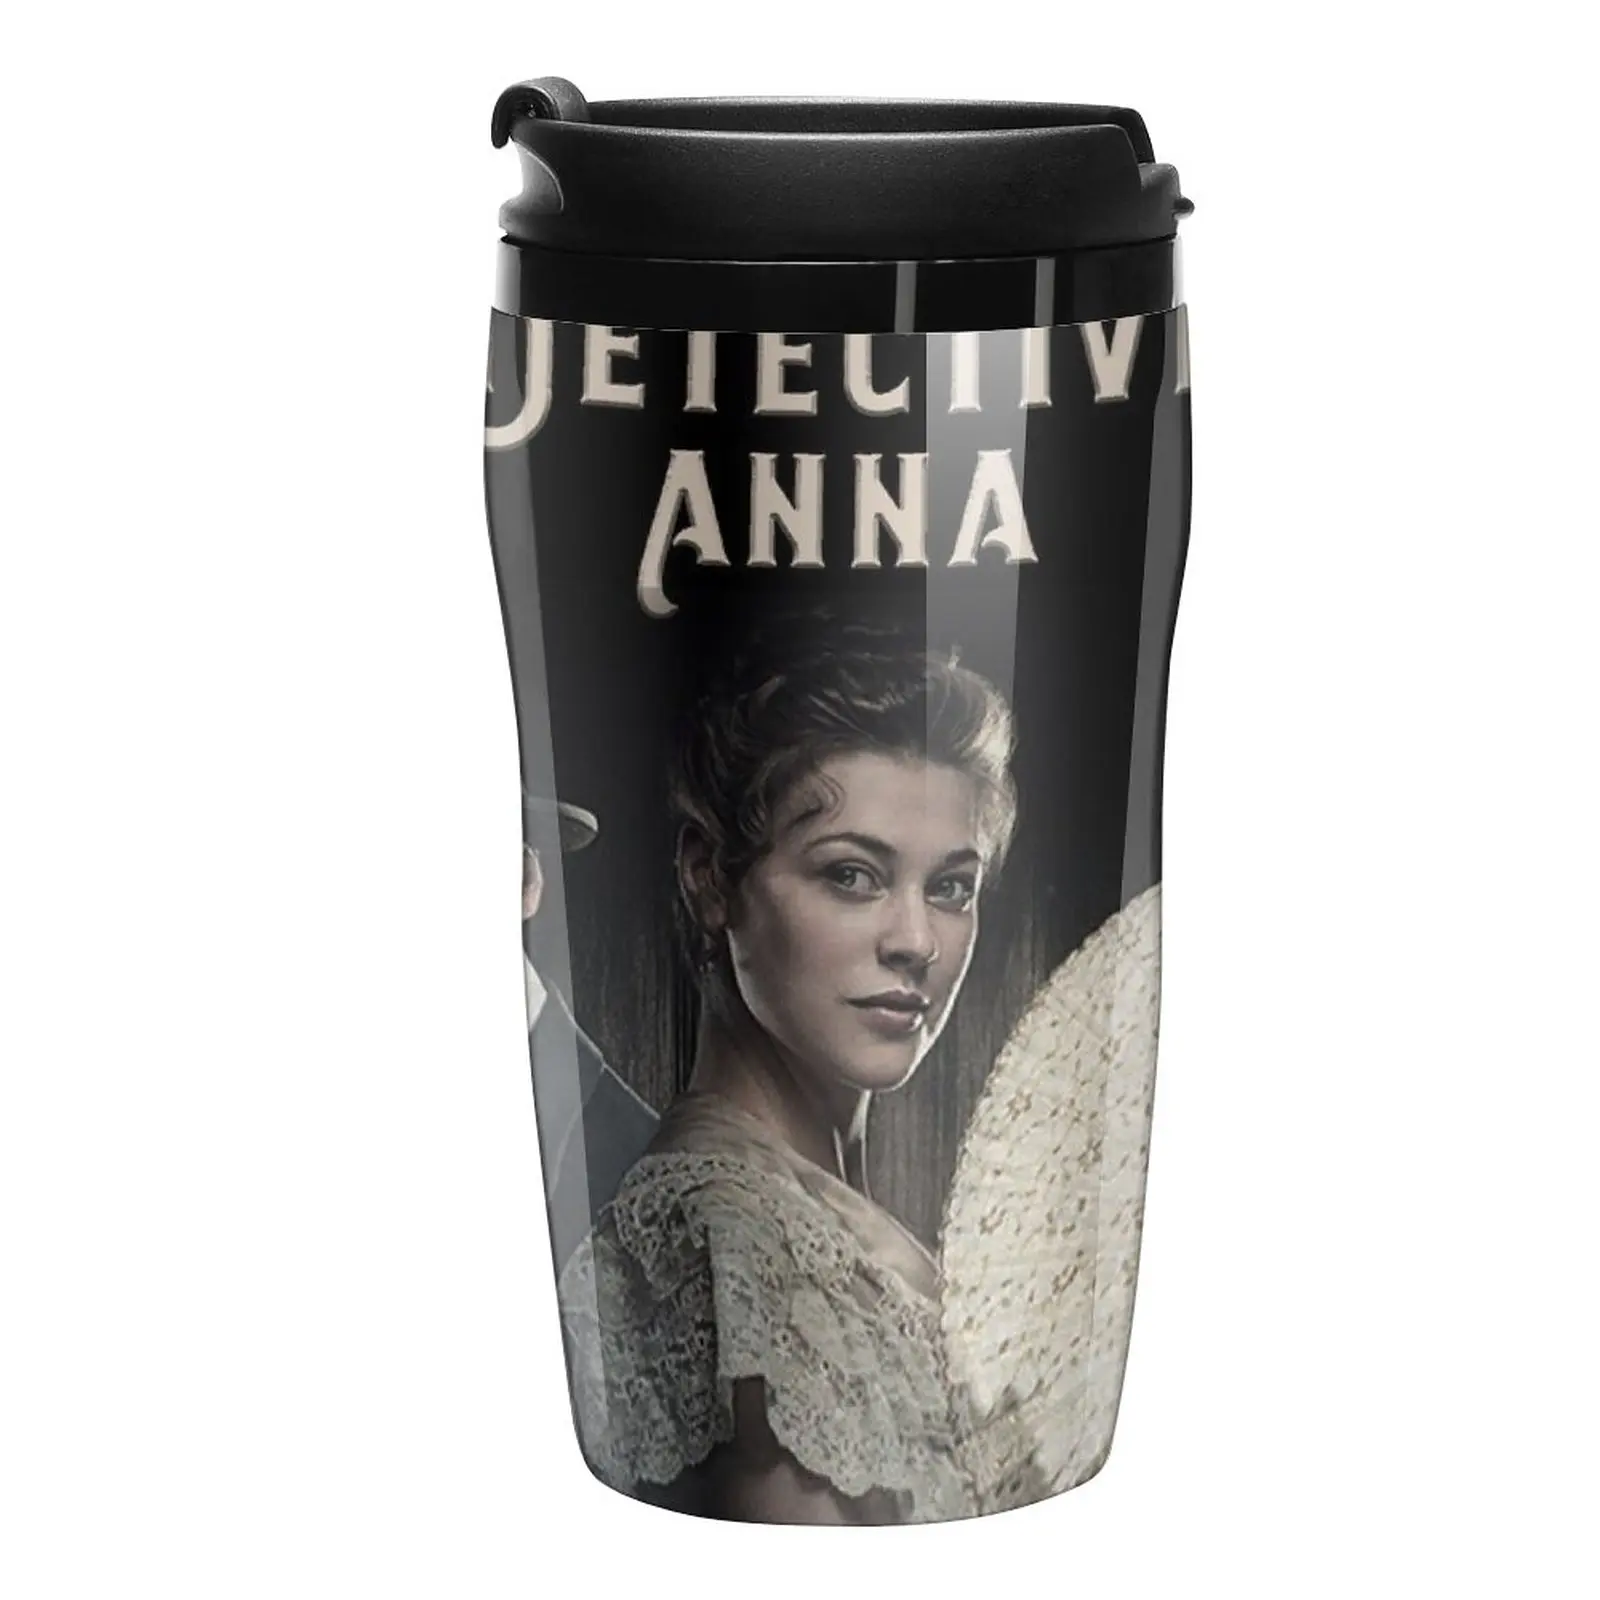 

Новая дорожная кофейная кружка детектив Анна, кружка для кофе, кружка для путешествий, Симпатичные кружки